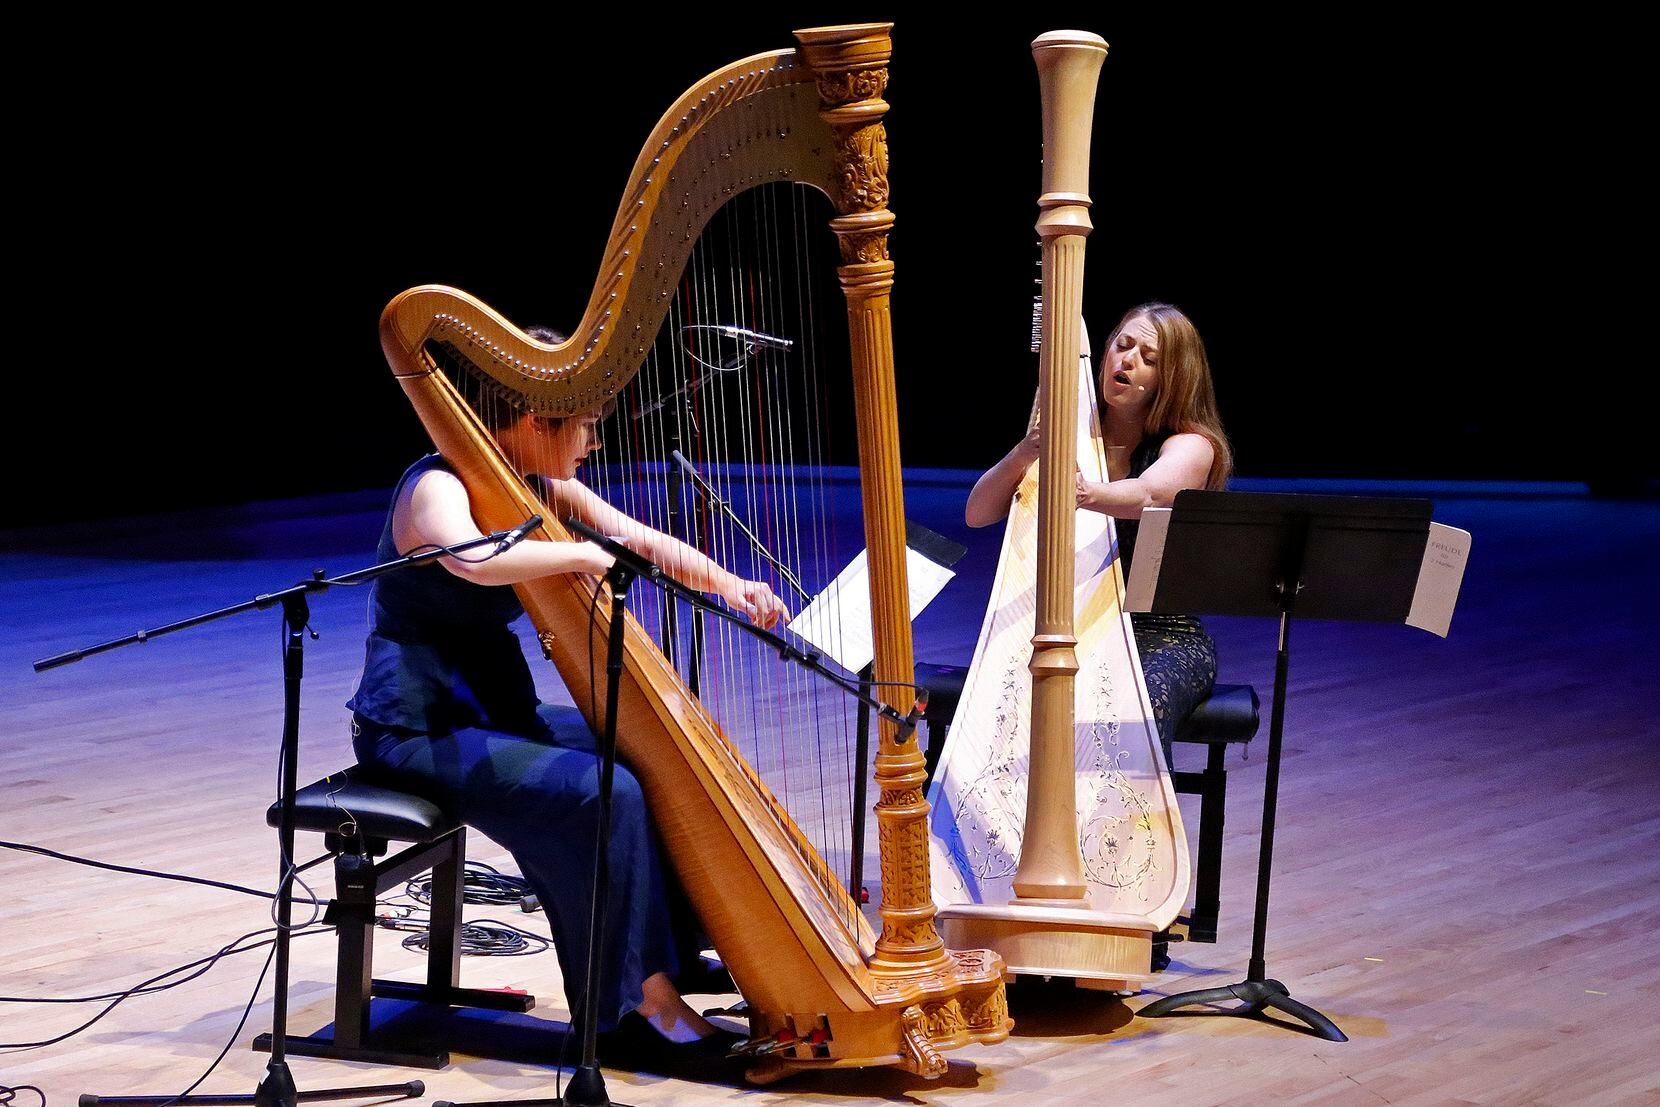 High school harpists are not criminals